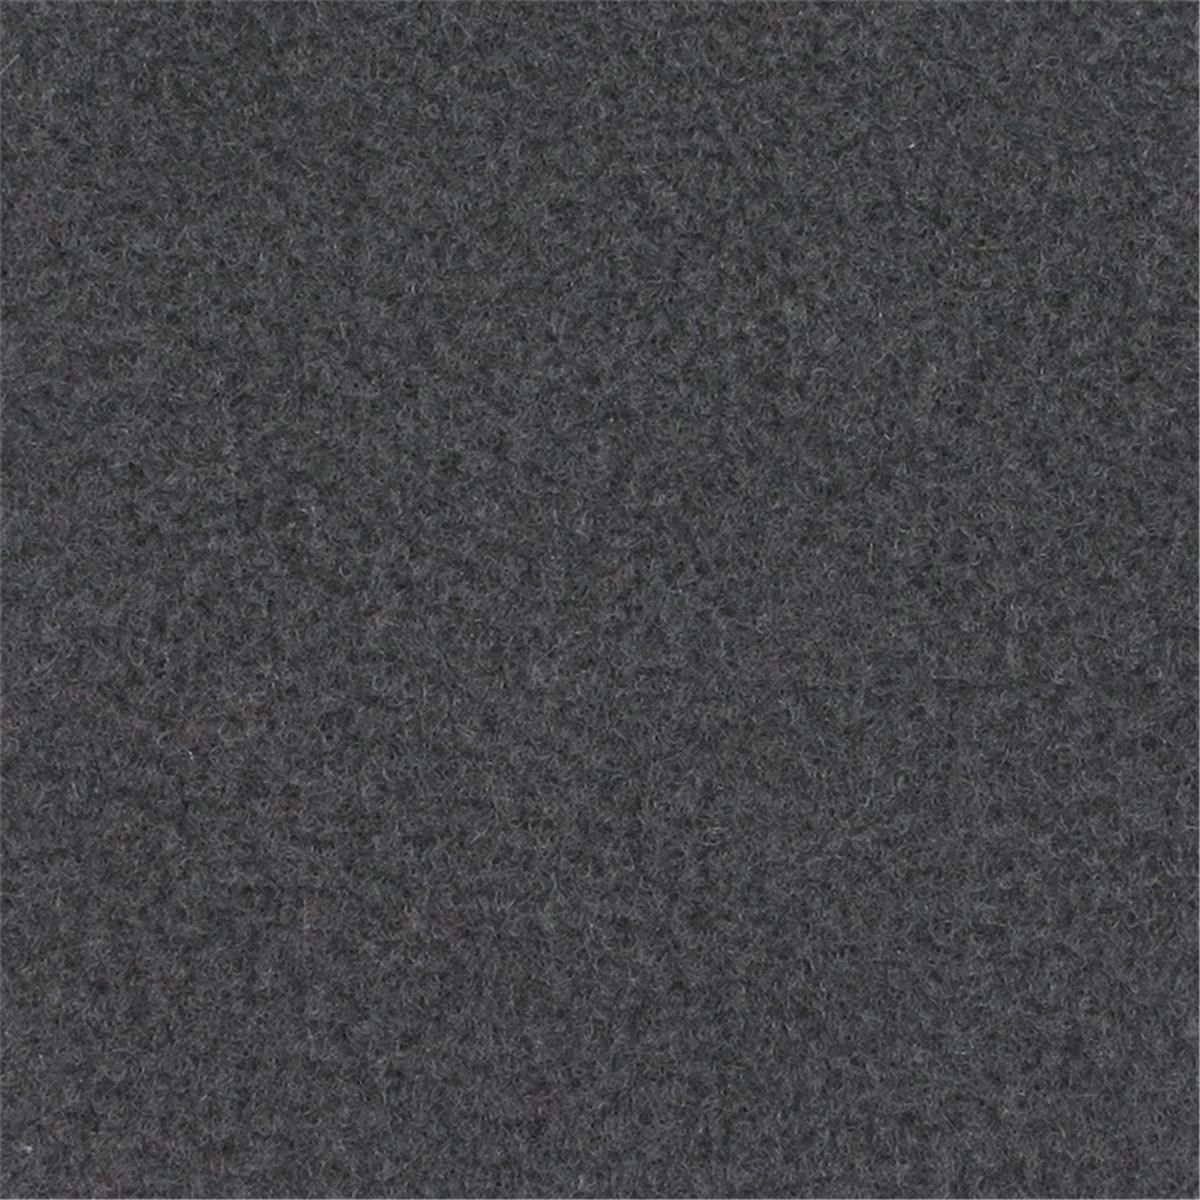 Messeboden Velours EXPOLUXE Dark Grey 9515 mit Schutzfolie  - Rollenbreite 200 cm